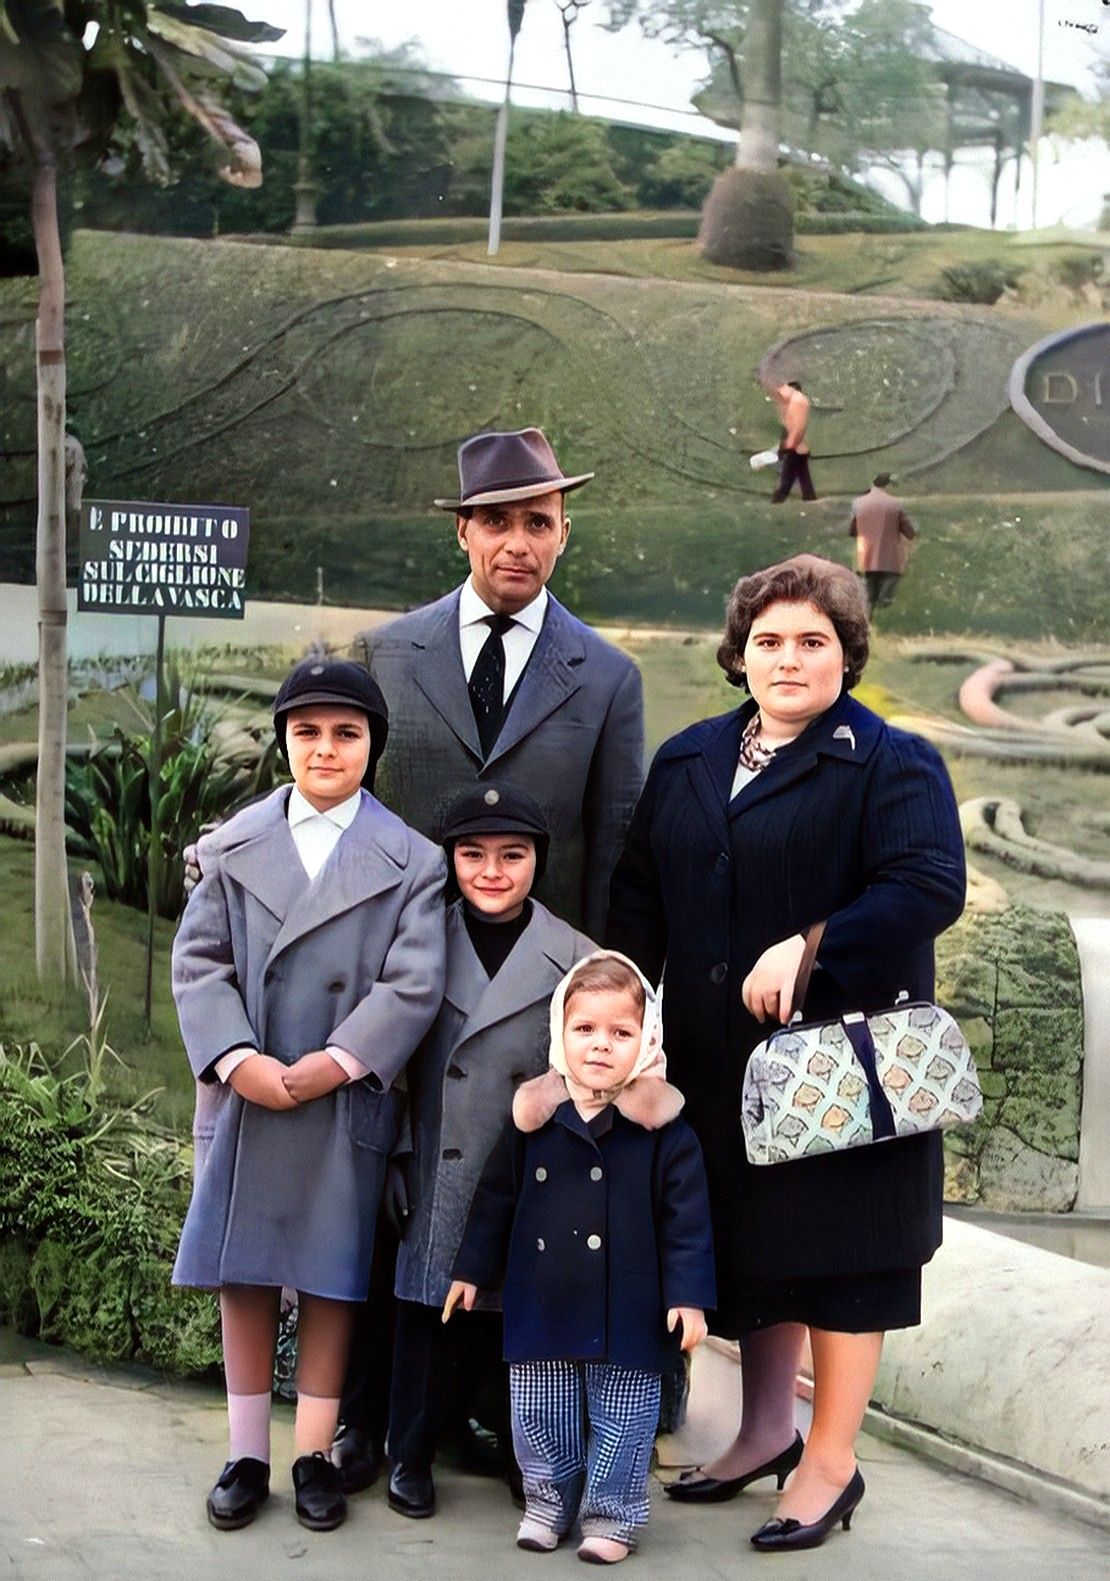 1962 - Catania - Villa Bellini: Roggio Giuseppe, Schiavone Elena, Roggio Dario, Roggio Paride e Roggio Linda. 